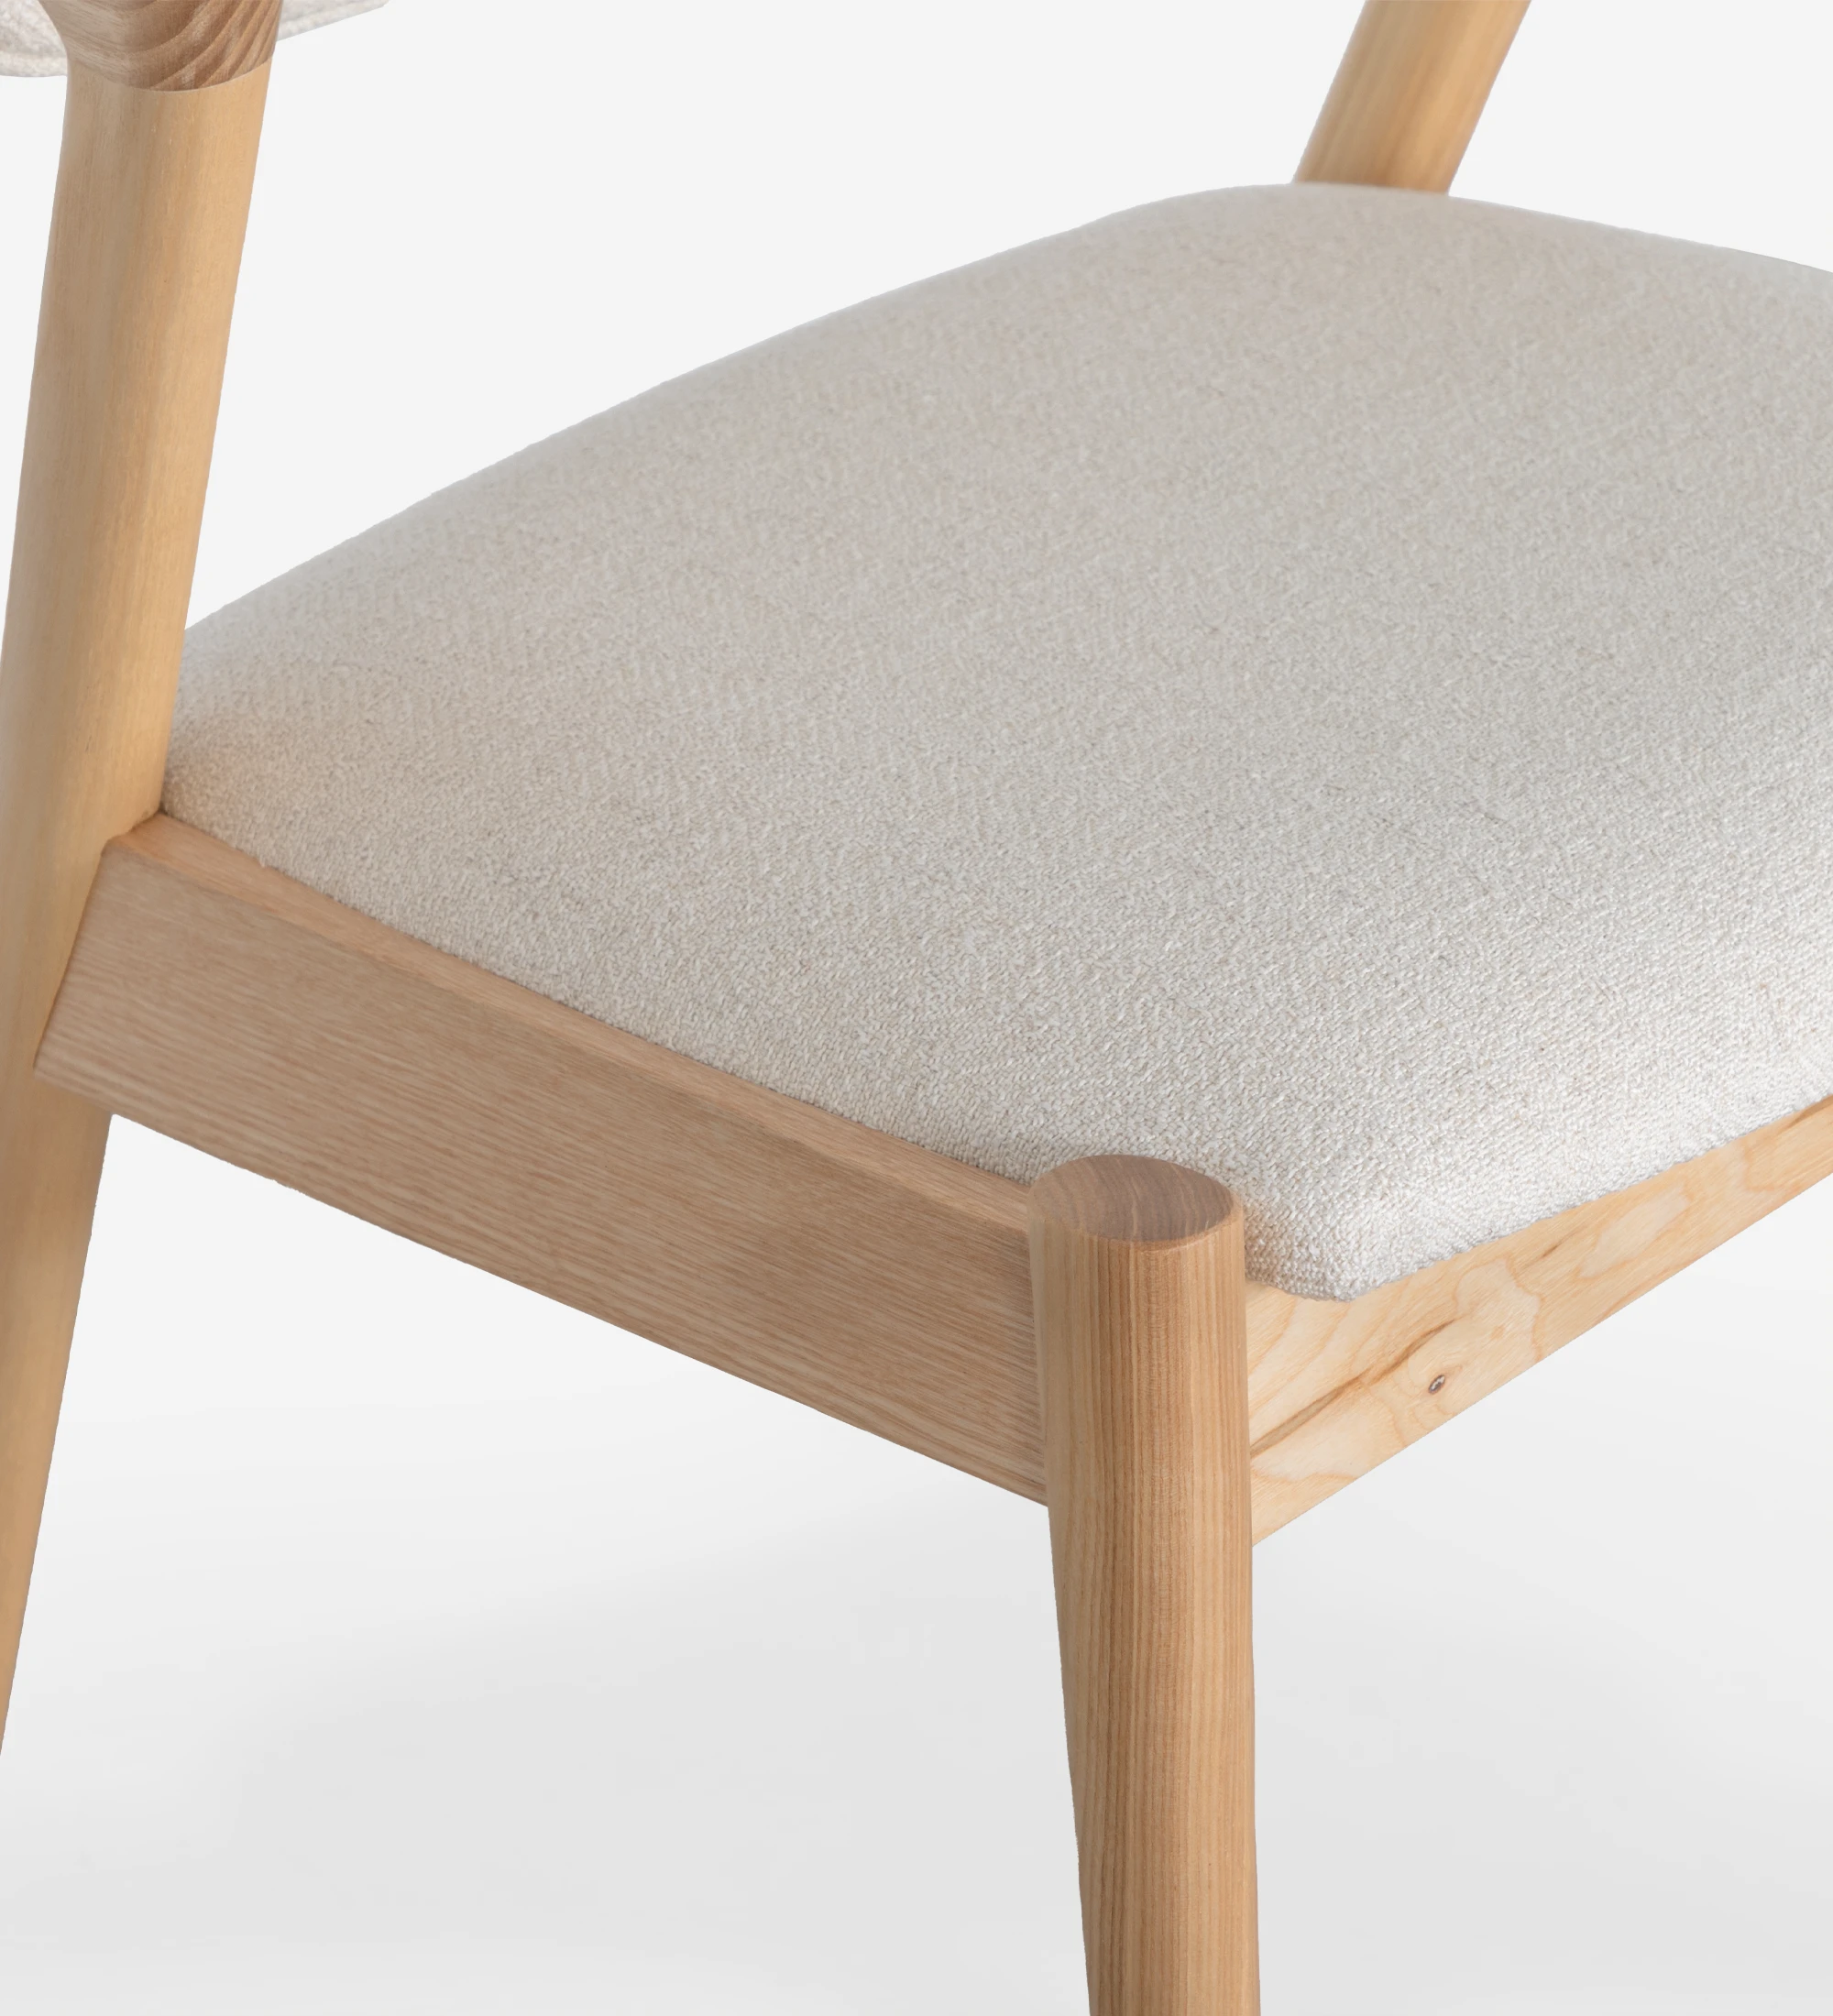 Silla en madera de fresno natural, con asiento y respaldo tapizados en tela